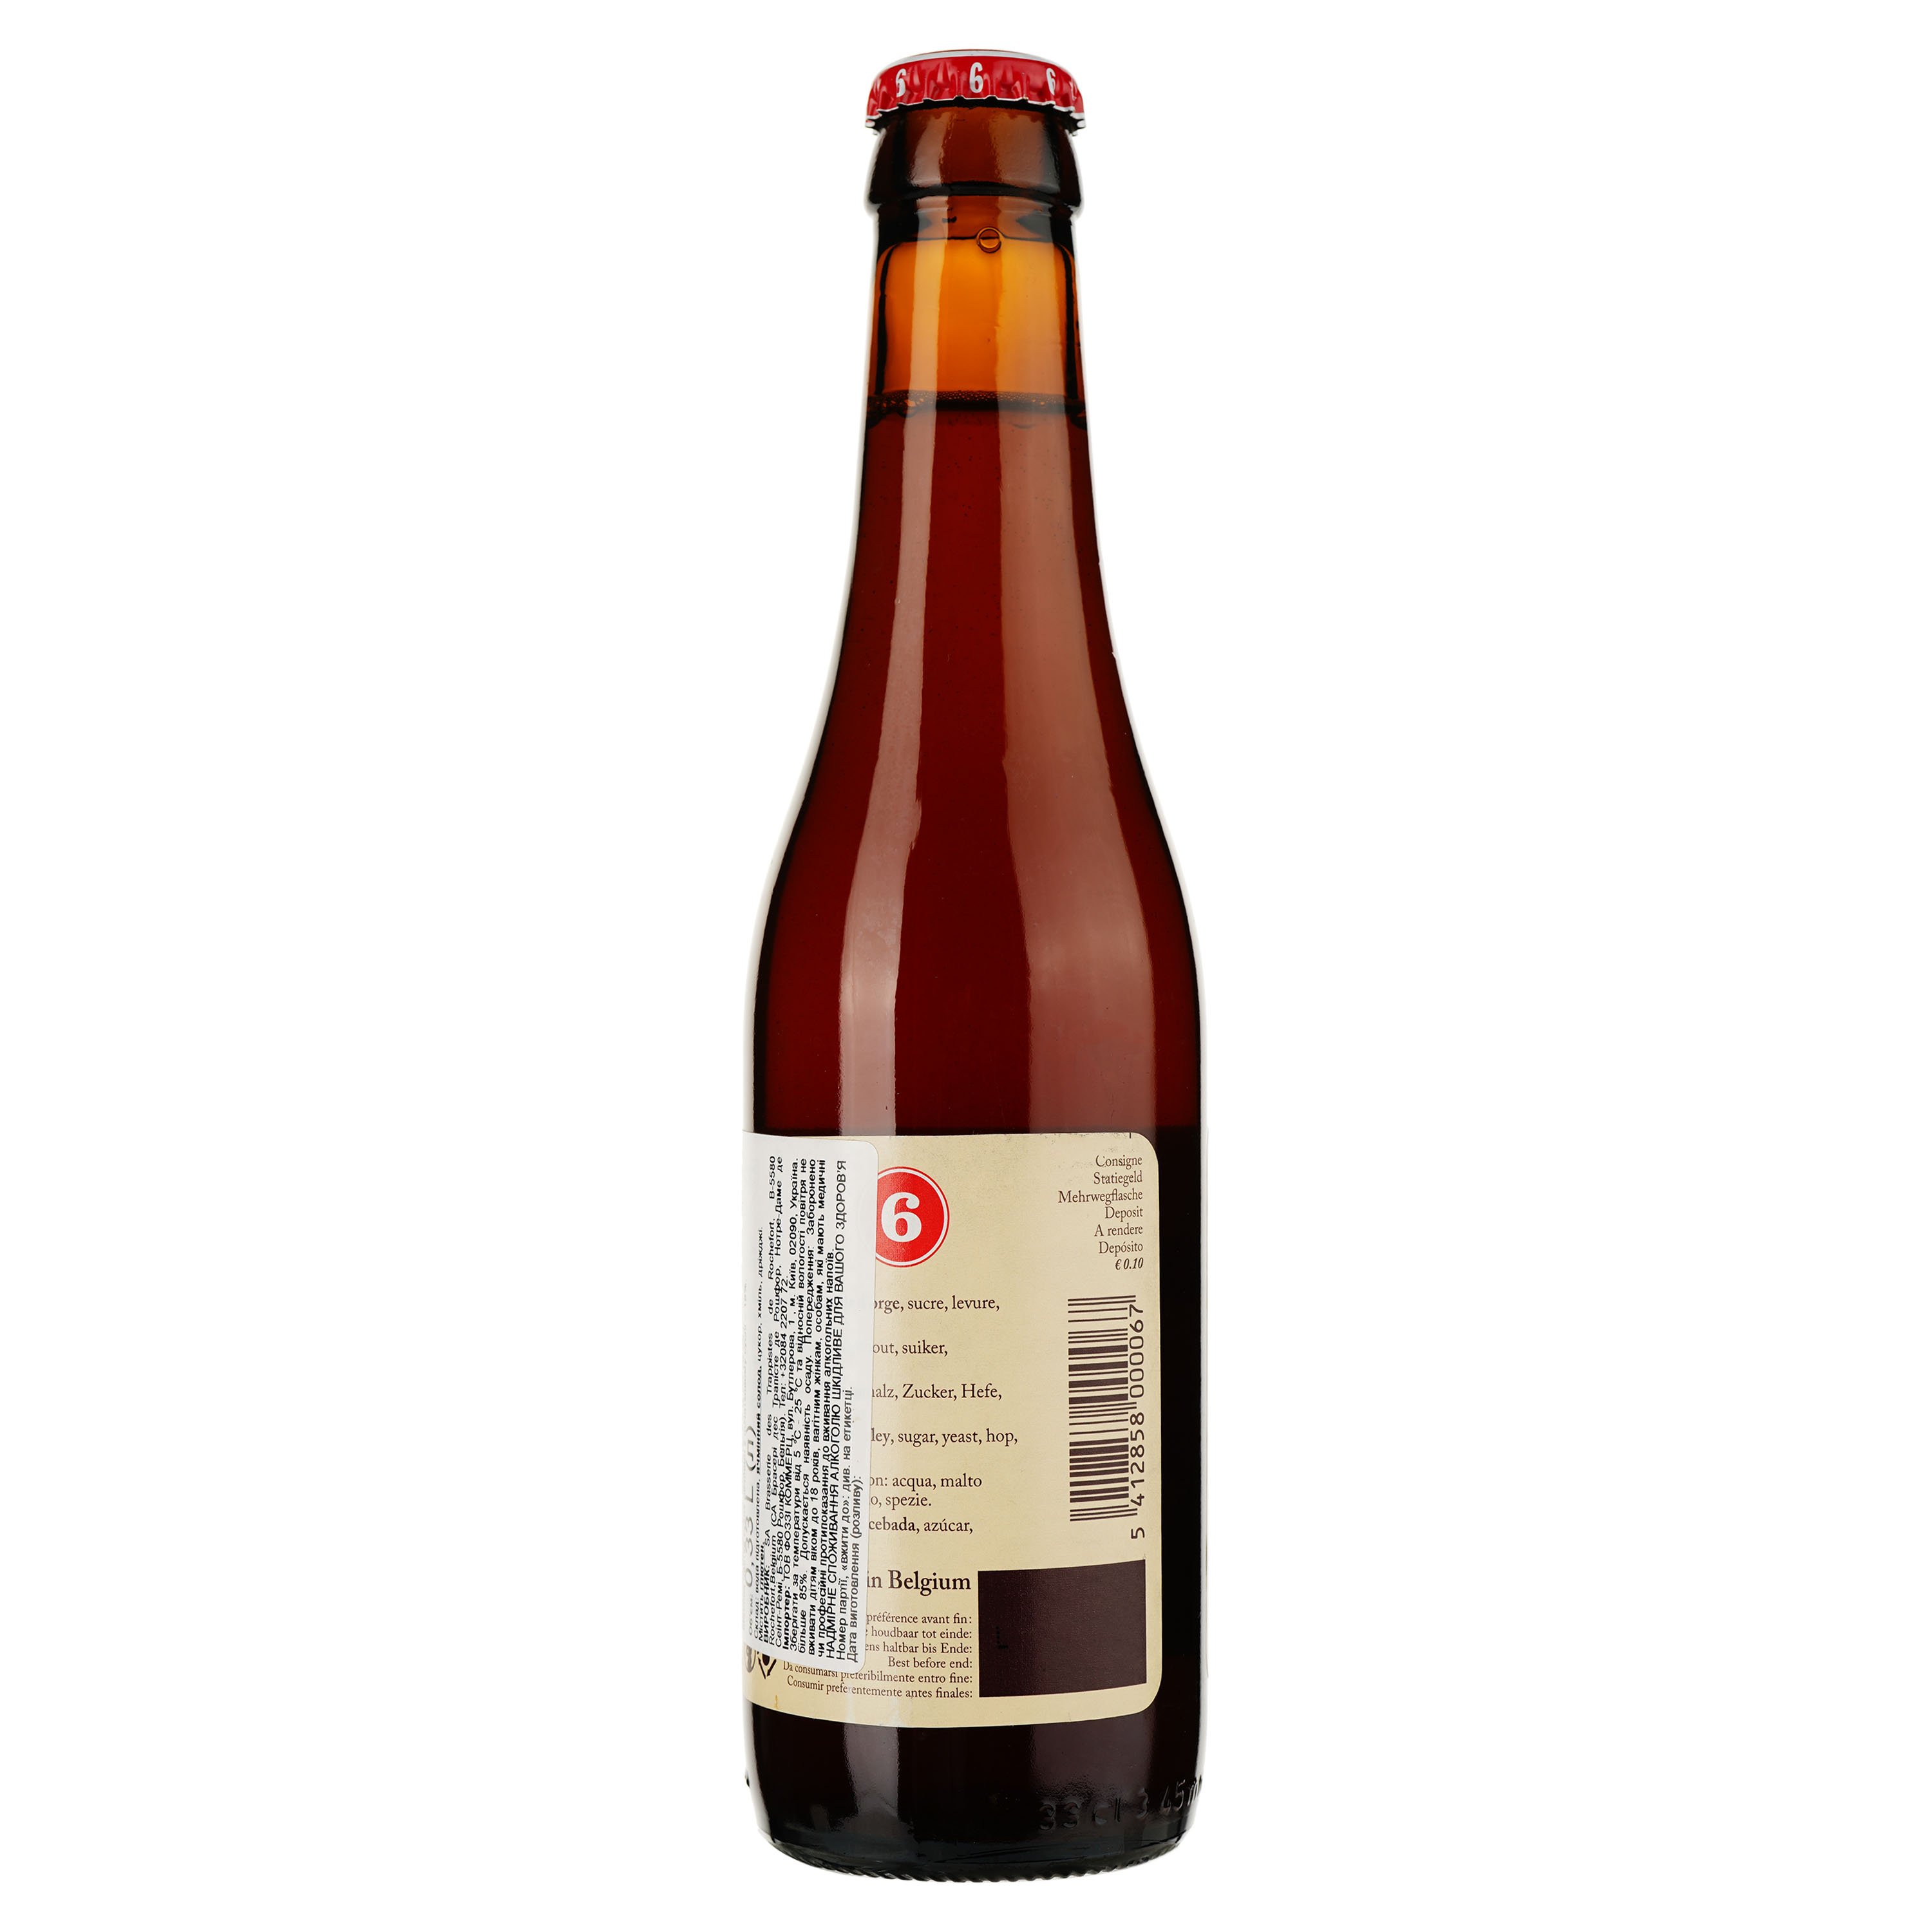 Пиво Trappistes Rochefort 6 темное солодовое нефильтрованное, 7,5%, 0,33 л (545762) - фото 2